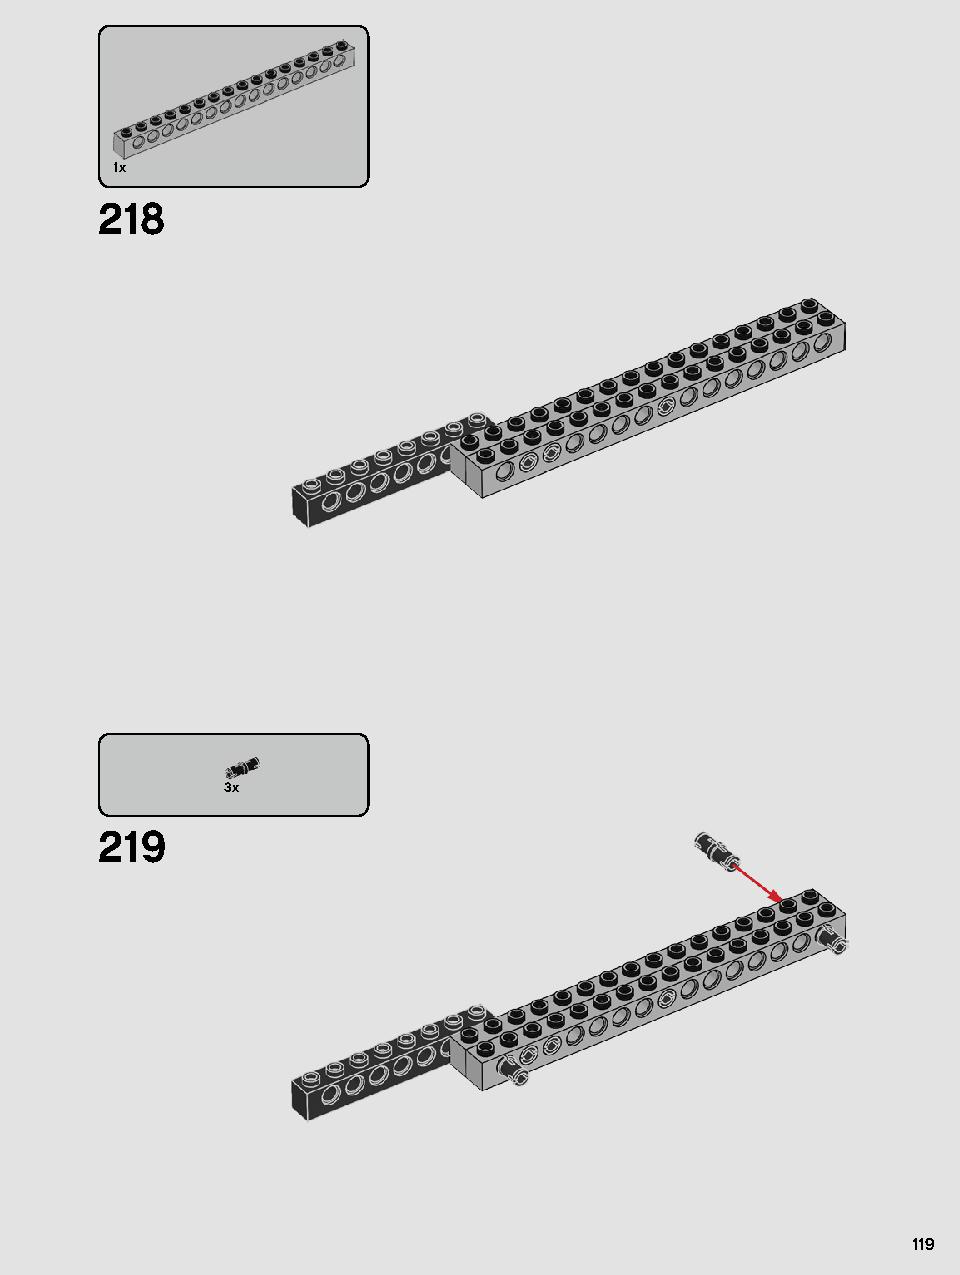 カイロ・レンのパーソナルシャトル™ 75256 レゴの商品情報 レゴの説明書・組立方法 119 page